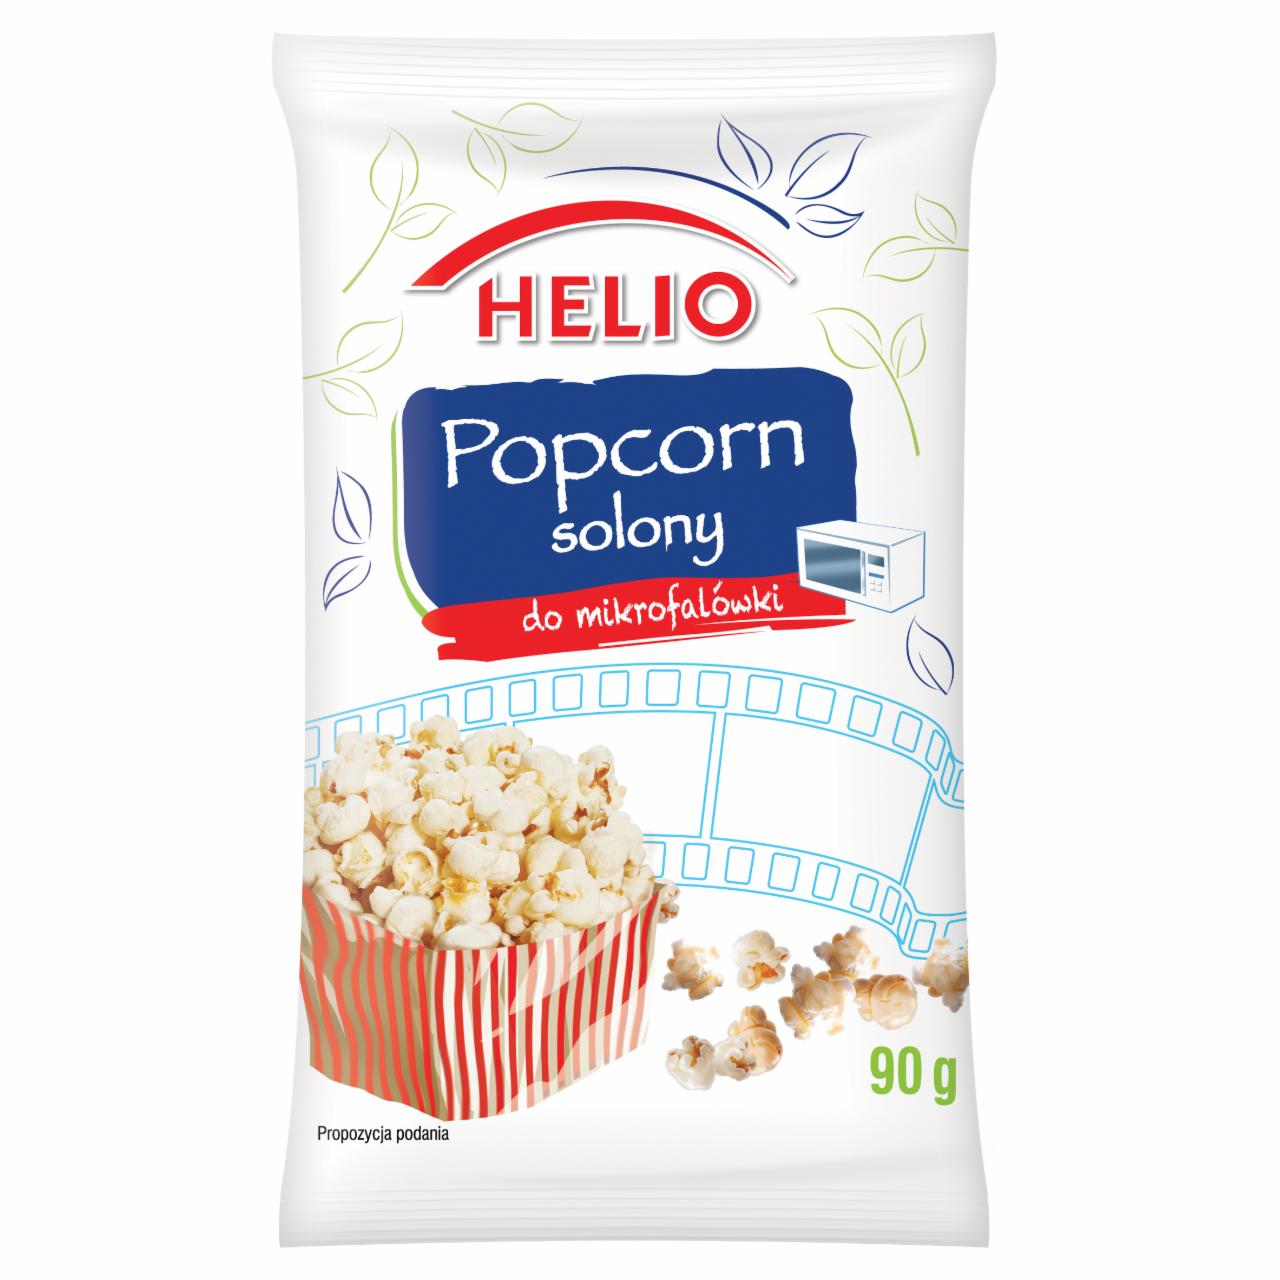 Zdjęcia - Popcorn solony HELIO